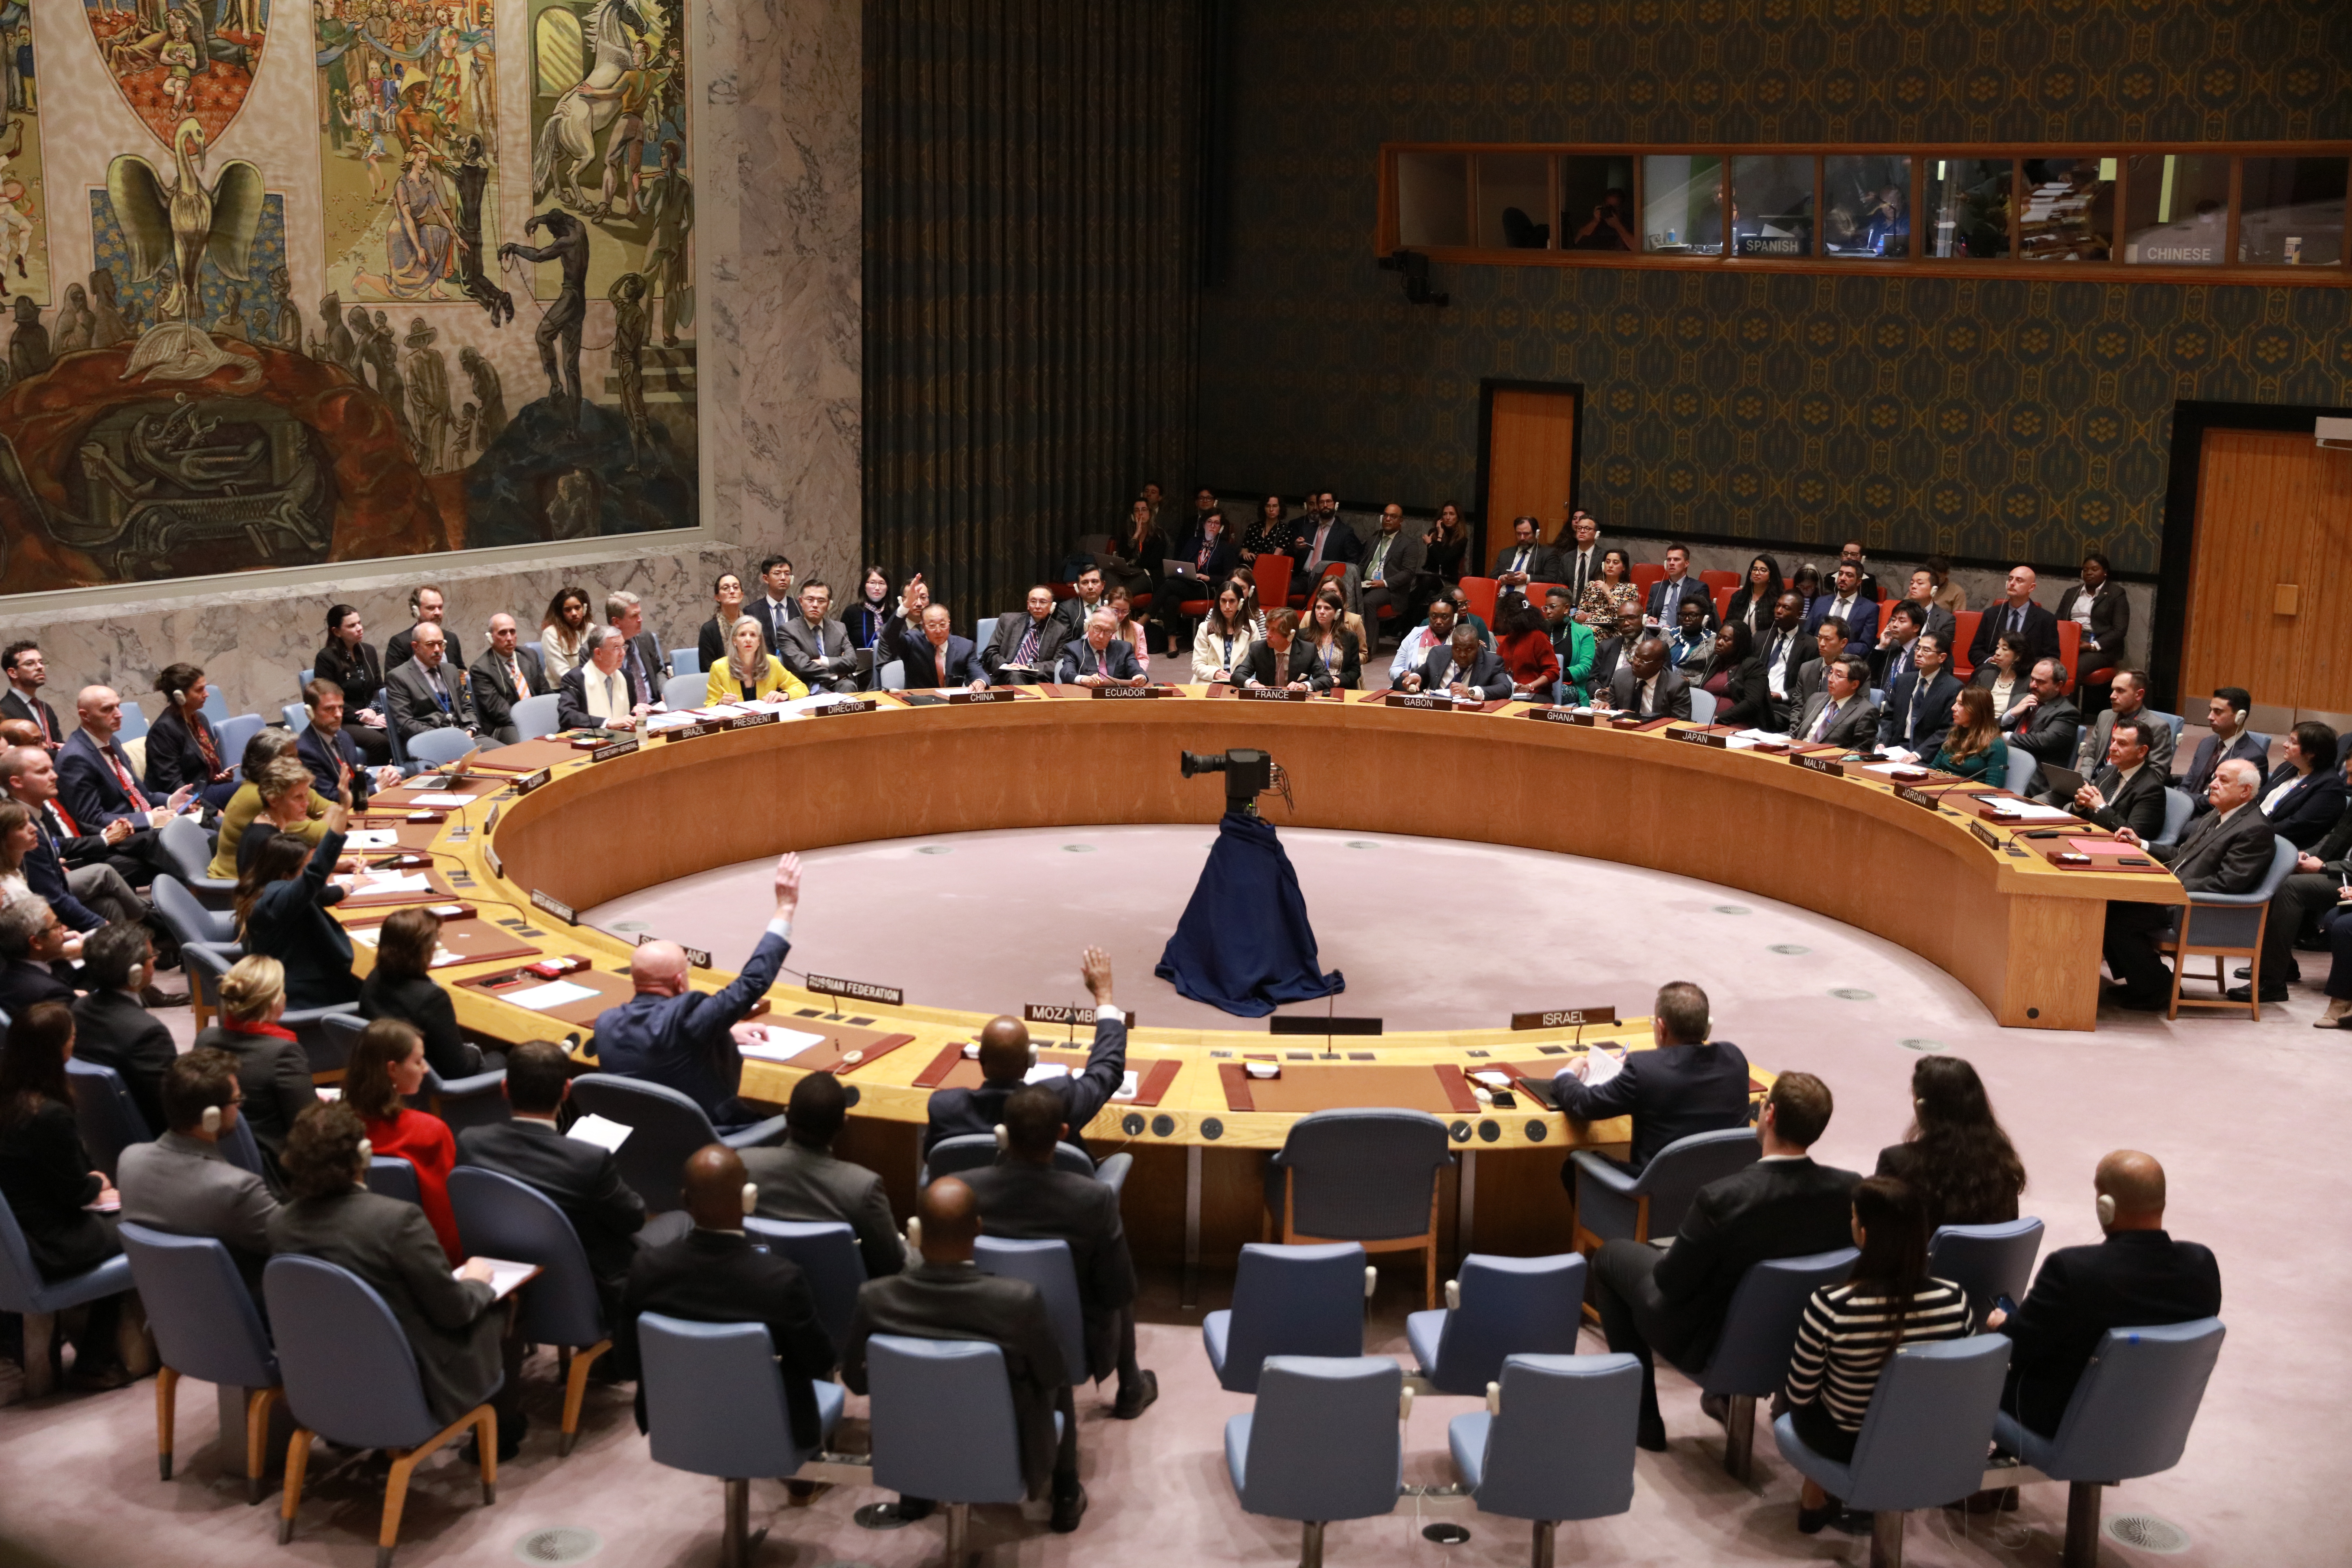 Els Estats Units veten una resolució de l'ONU per demanar un alto el foc a Gaza